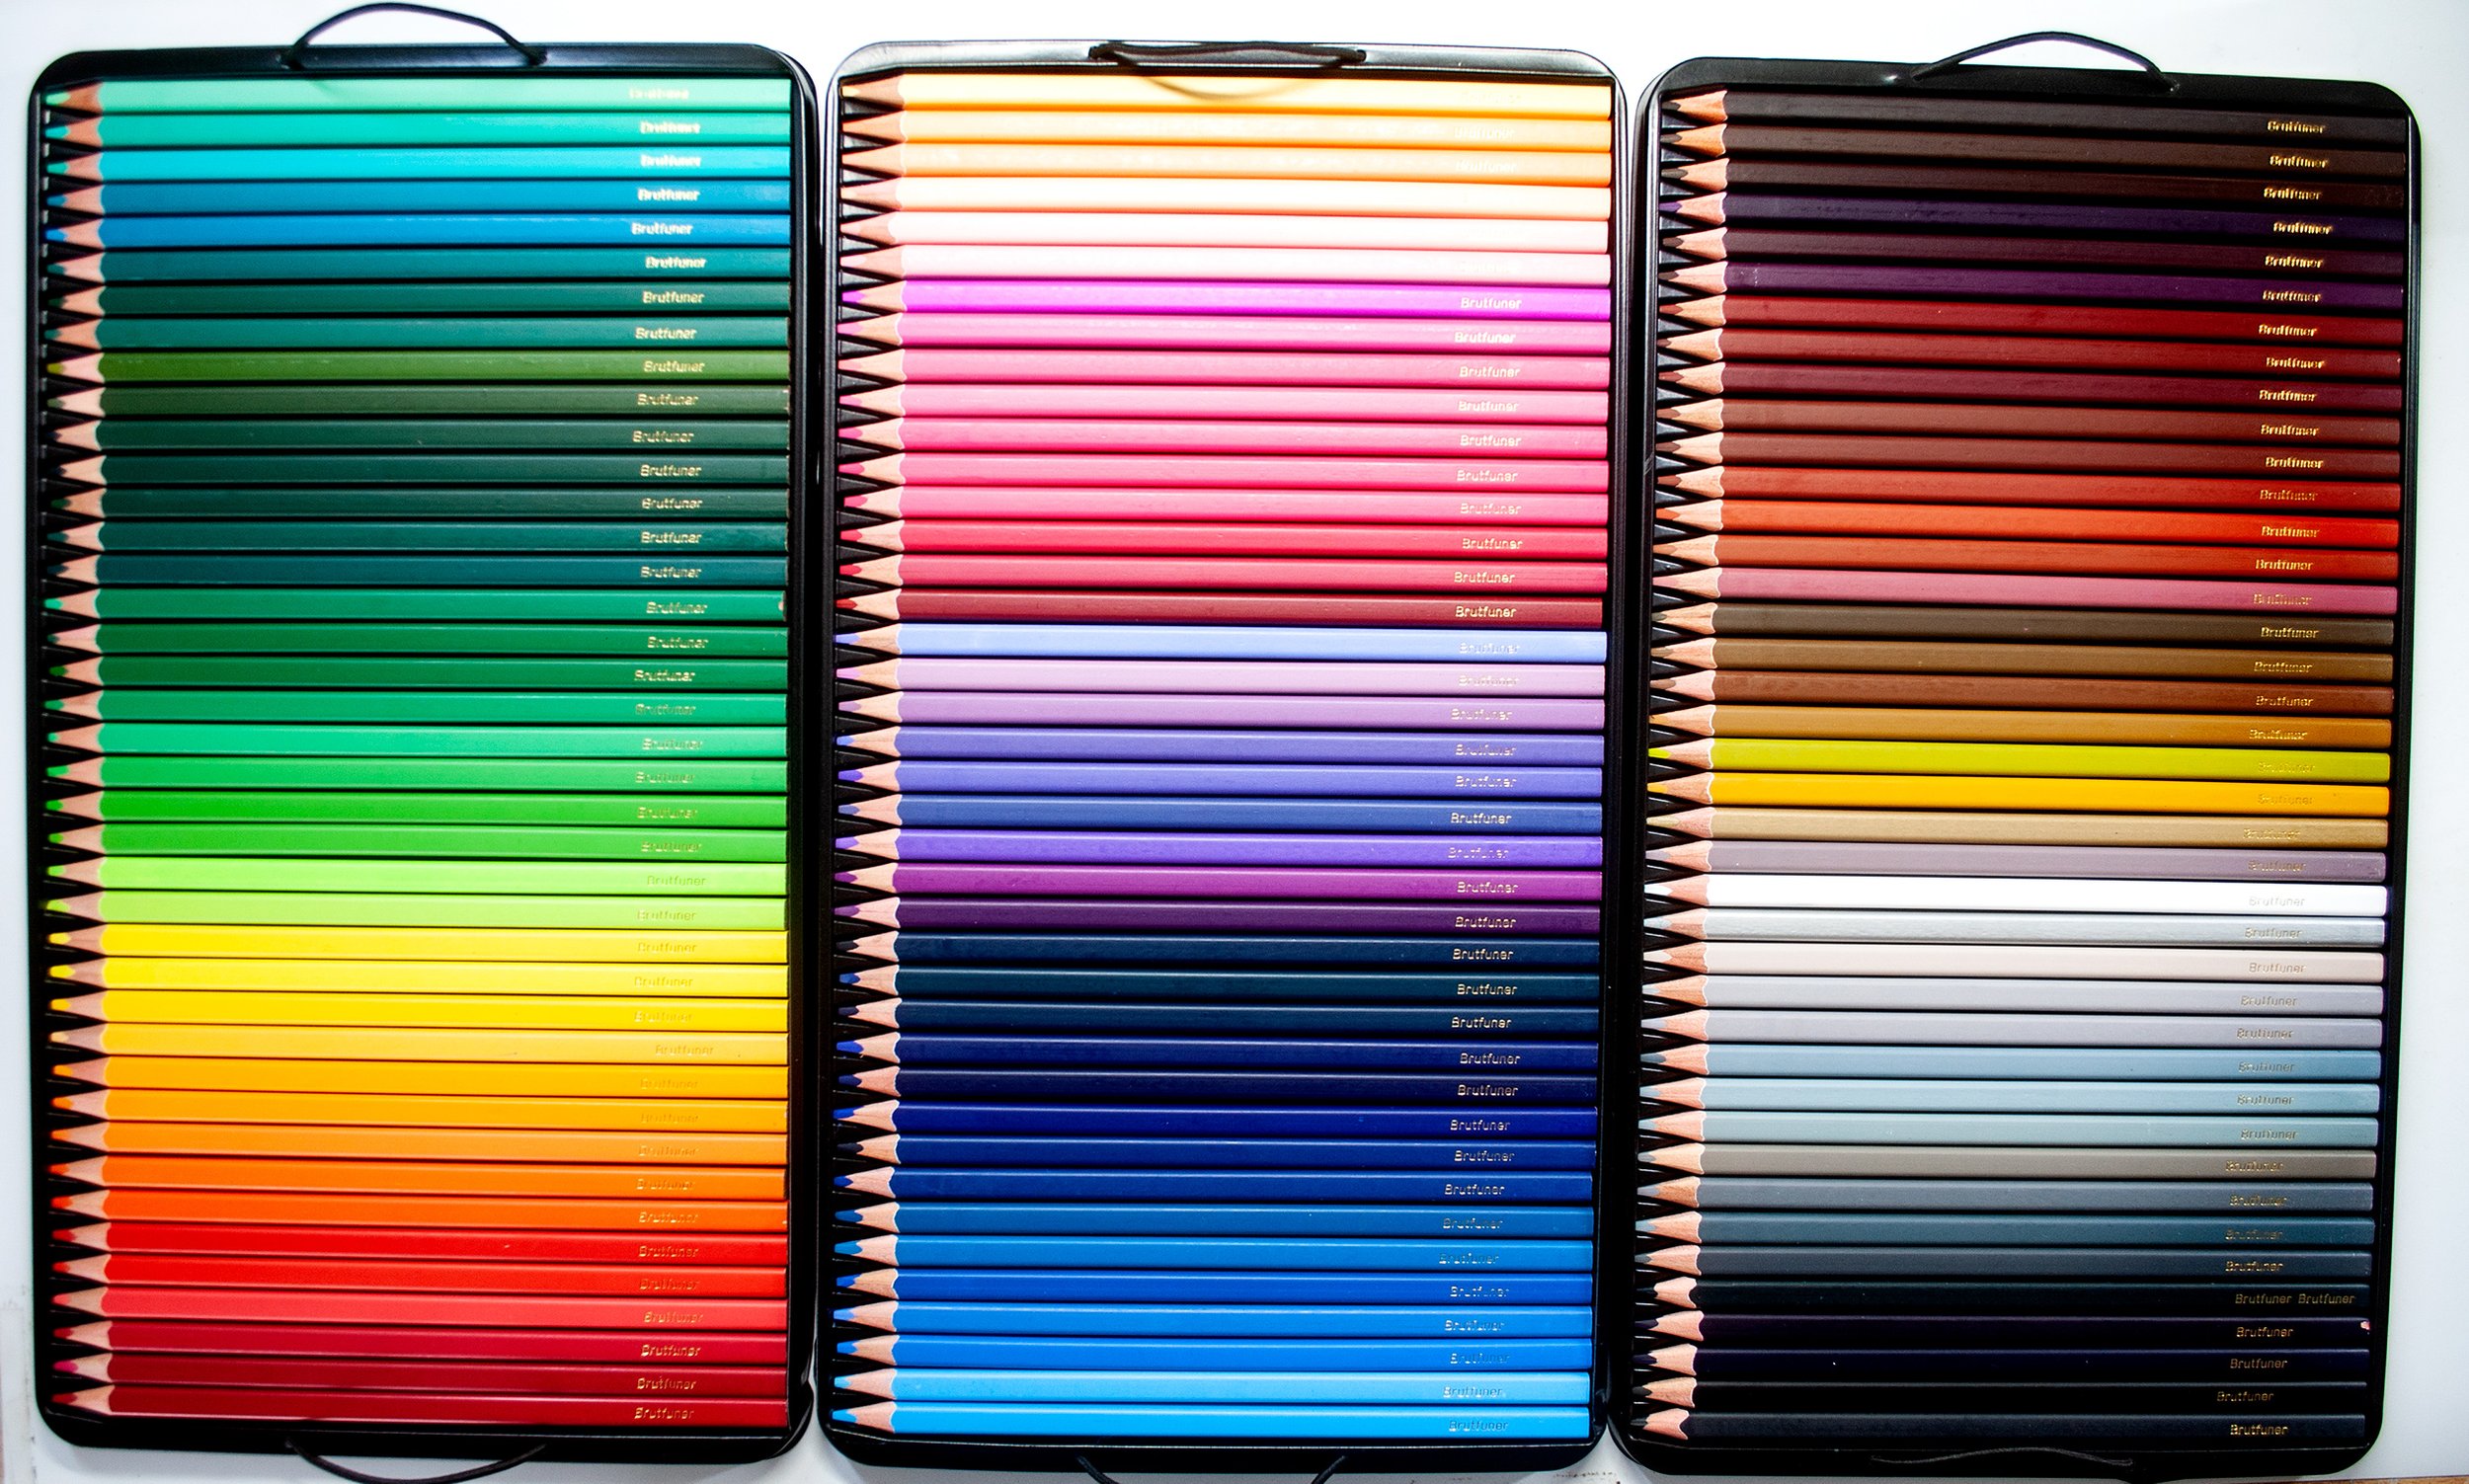  Mr. Pen- Colored Pencils, 36 Pack, Color Pencil Set, Color  Pencils, Map Pencils, Colored Pencils for Adults, Colored Pencils for Kids,  Colored Pencils for Adult Coloring, Coloring Pencils for Adults 